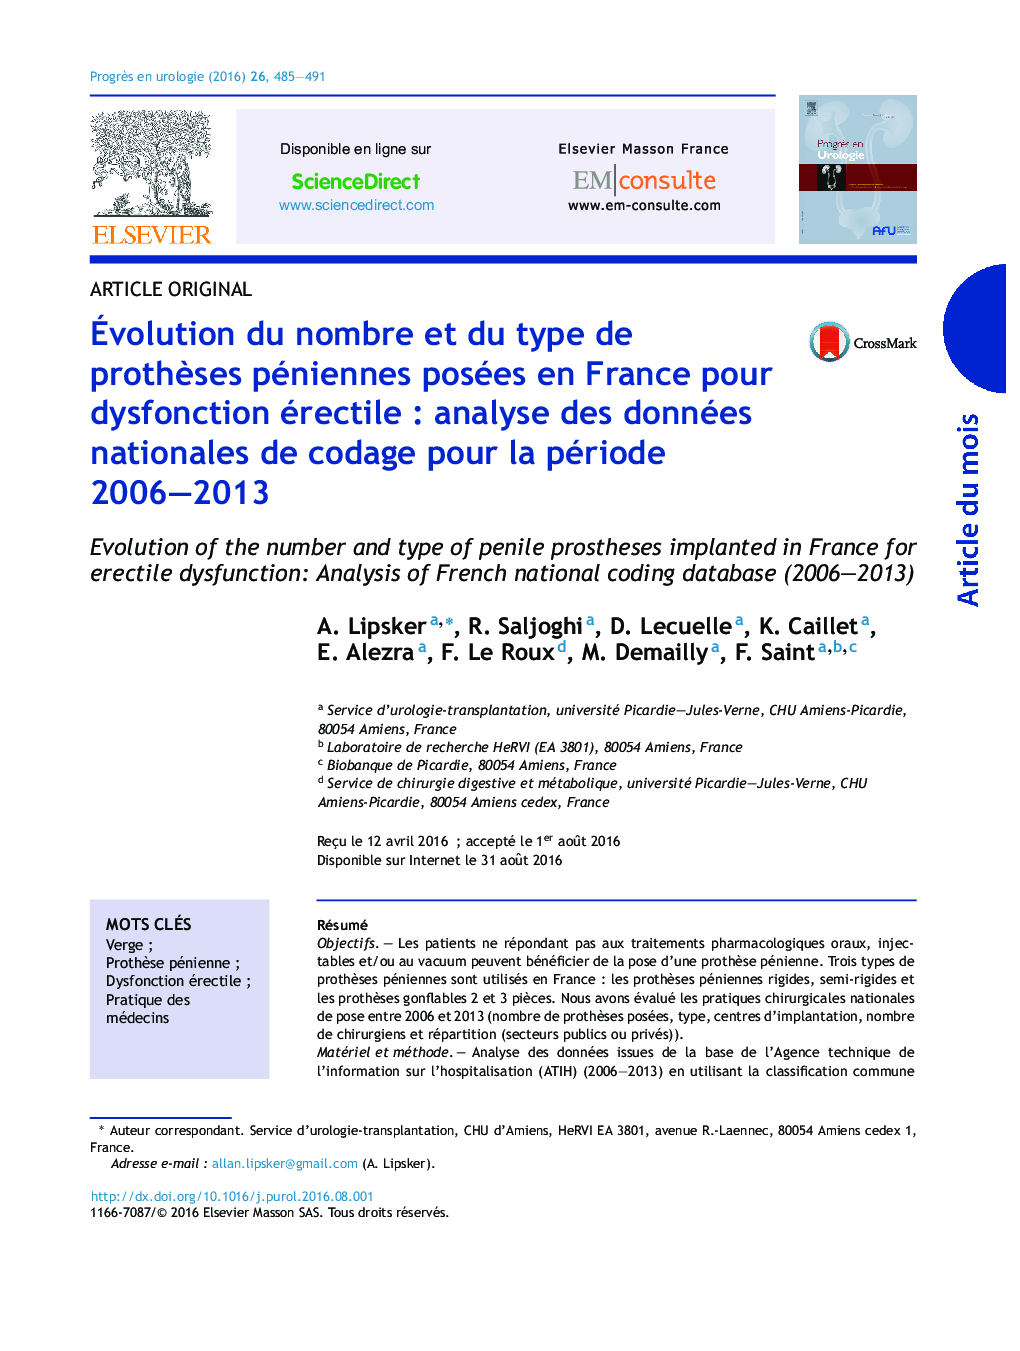 Évolution du nombre et du type de prothèses péniennes posées en France pour dysfonction érectile : analyse des données nationales de codage pour la période 2006–2013